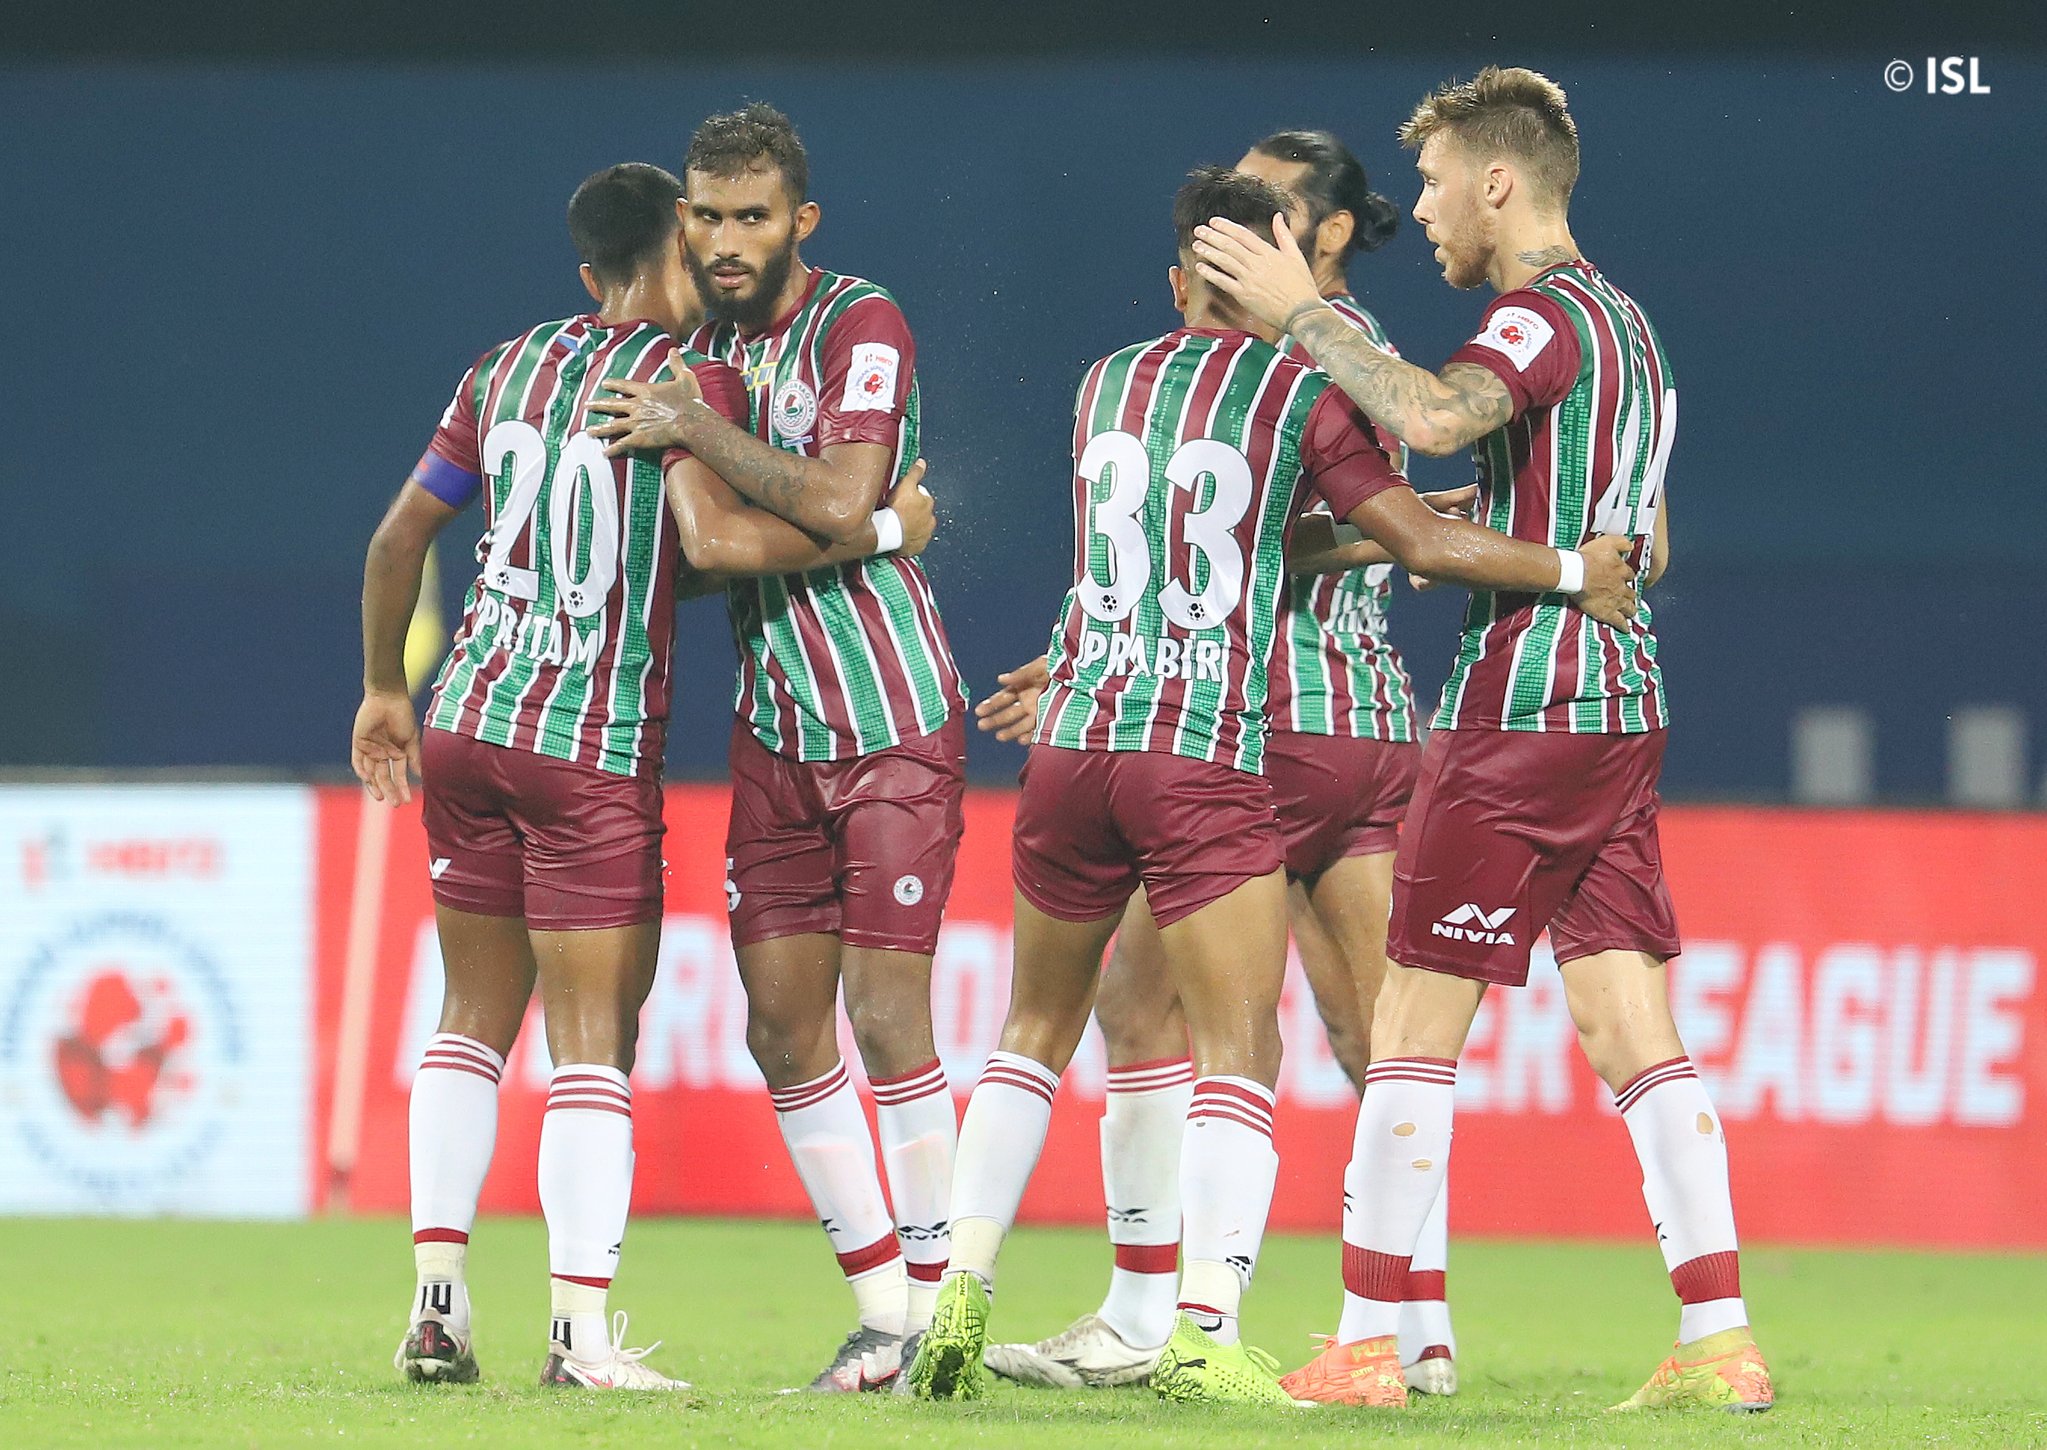 ISL: In-form ATK Mohun Bagan looking to end Bengaluru FC’s unbeaten run